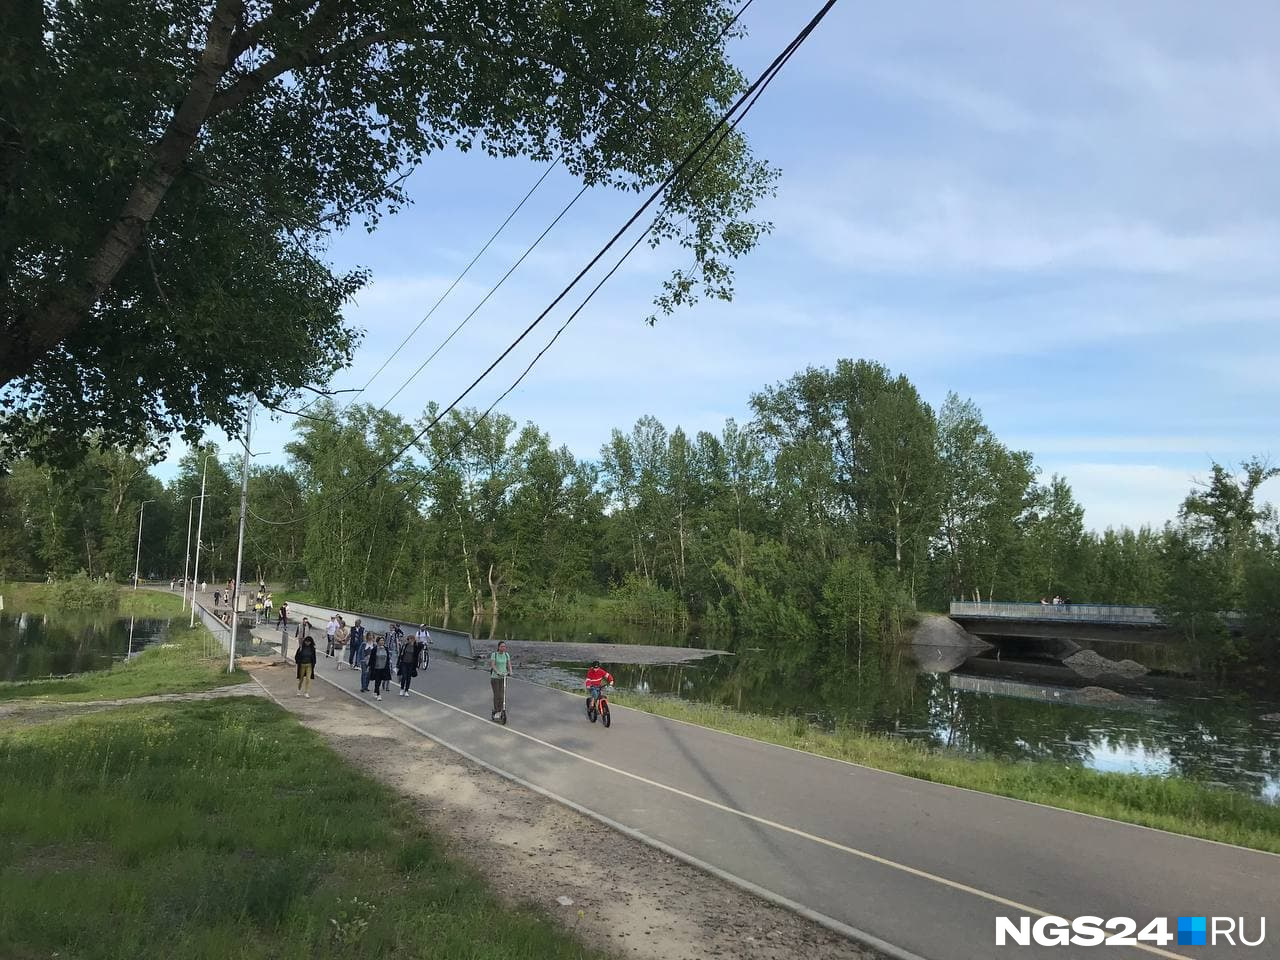 Несмотря на то что в Енисее вода прибывает, на острове Татышев мы заметили, что уже можно спокойно проезжать по мосту. До этого путь пешеходам и велосипедистам был отрезан 